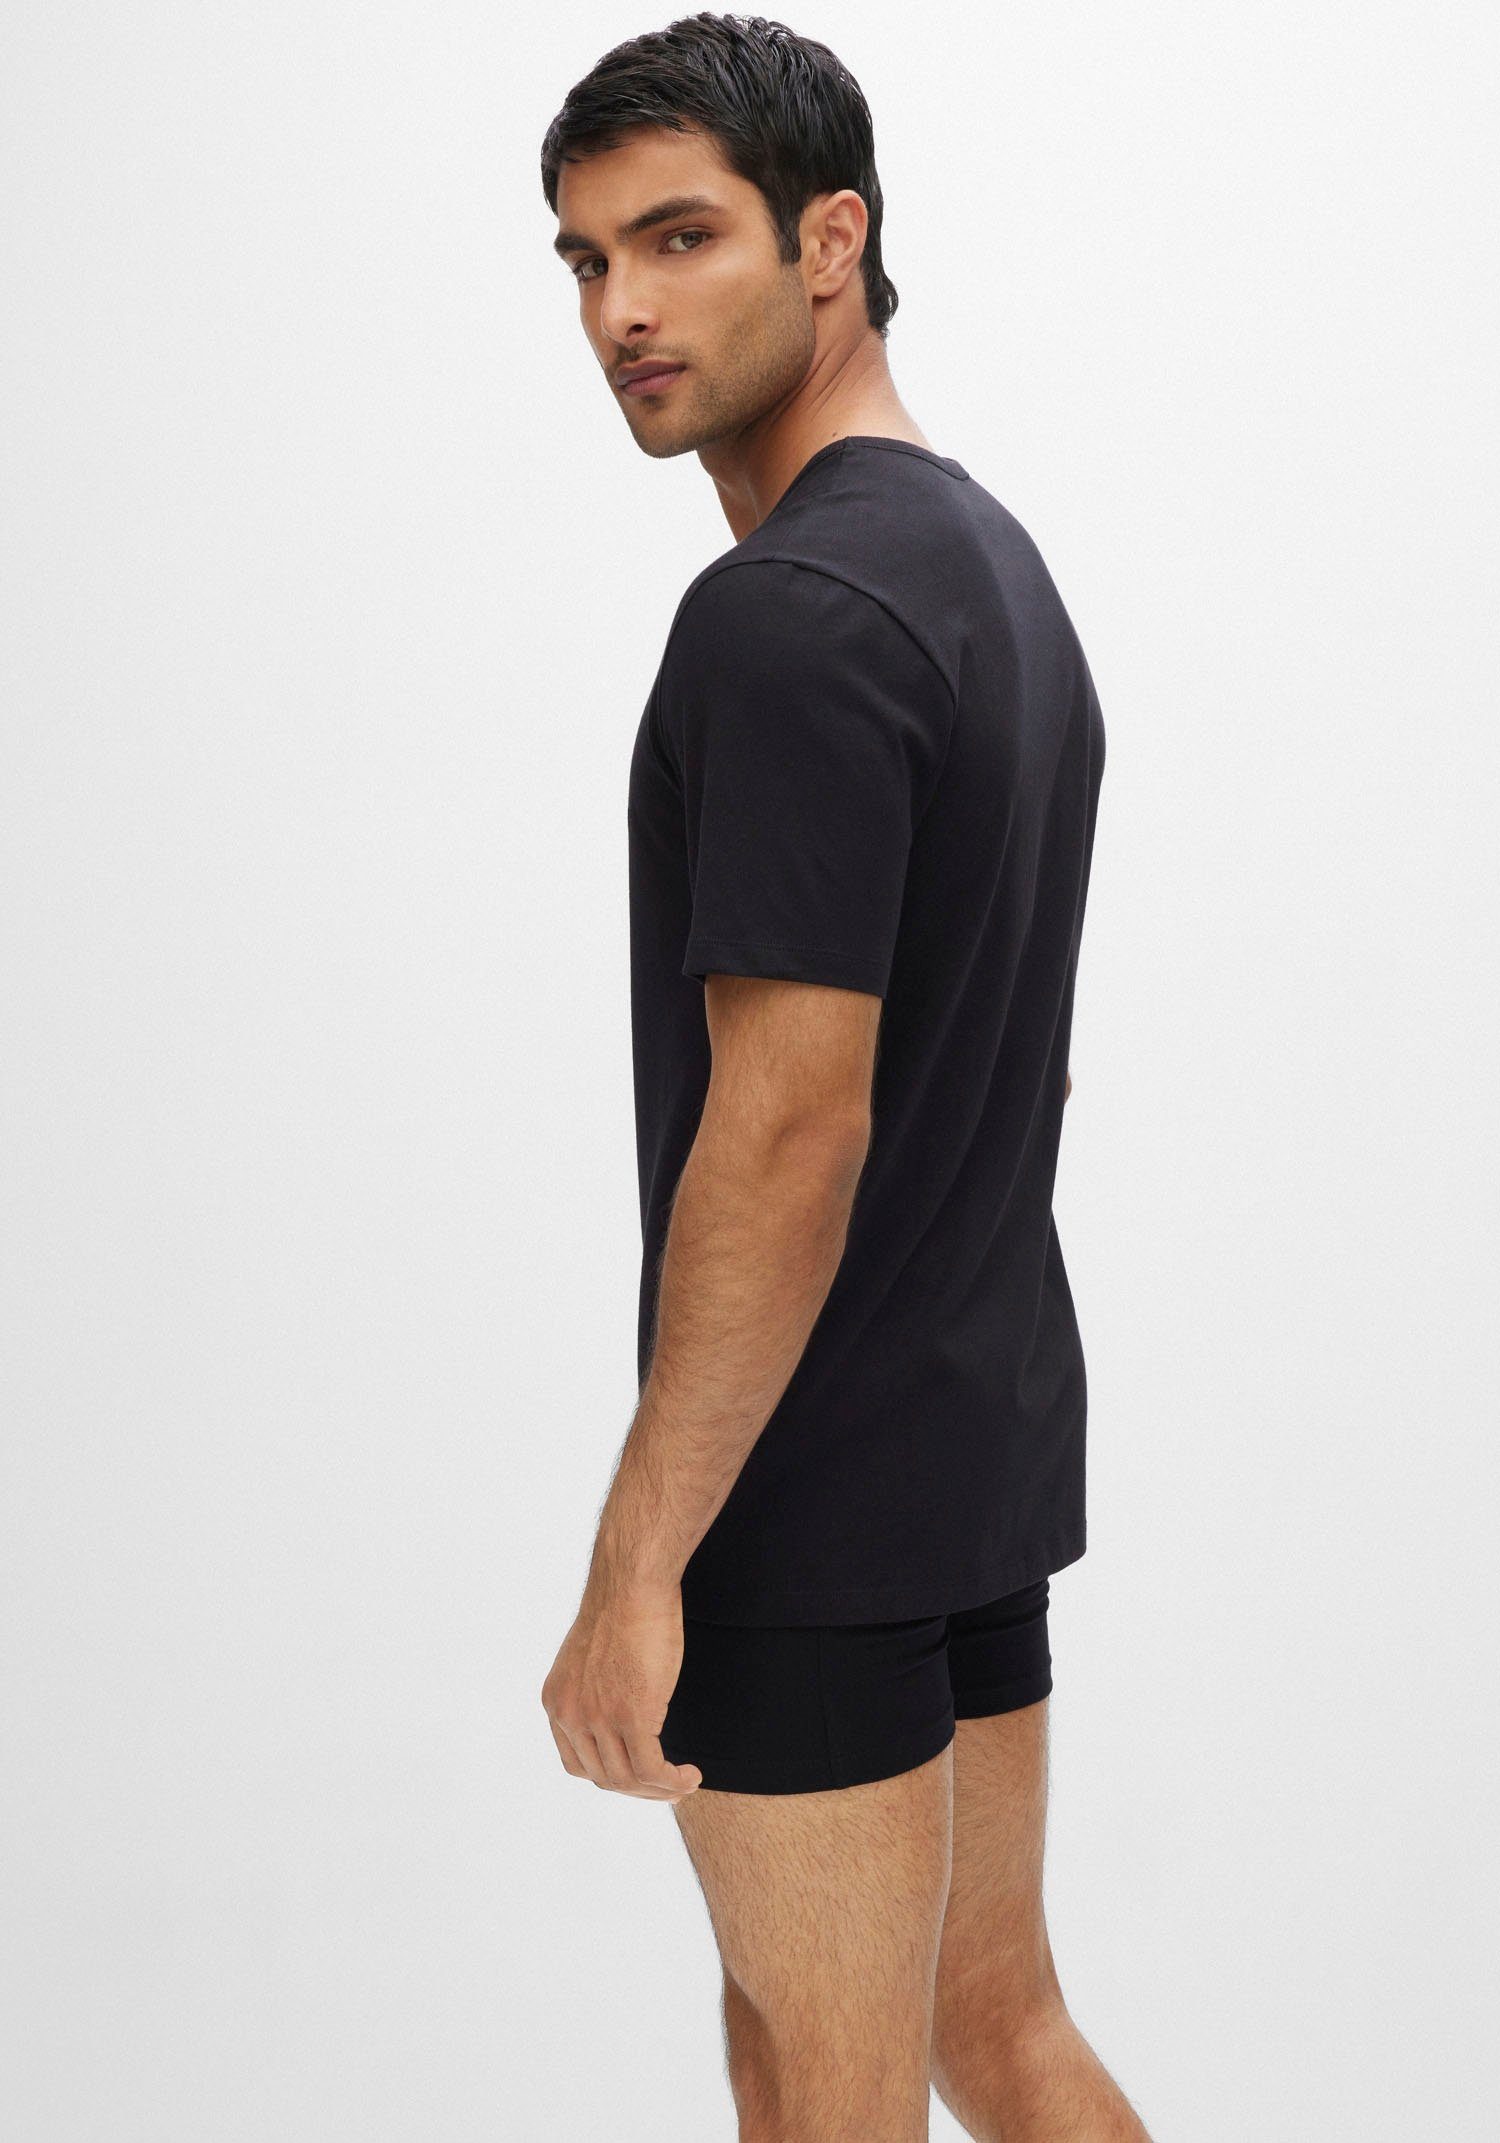 BOSS T-Shirt T-Shirt Rundhals mit dezentem grau-meliert, BOSS assorted_pre-pack, Logo-Print schwarz999 (3er-Pack)